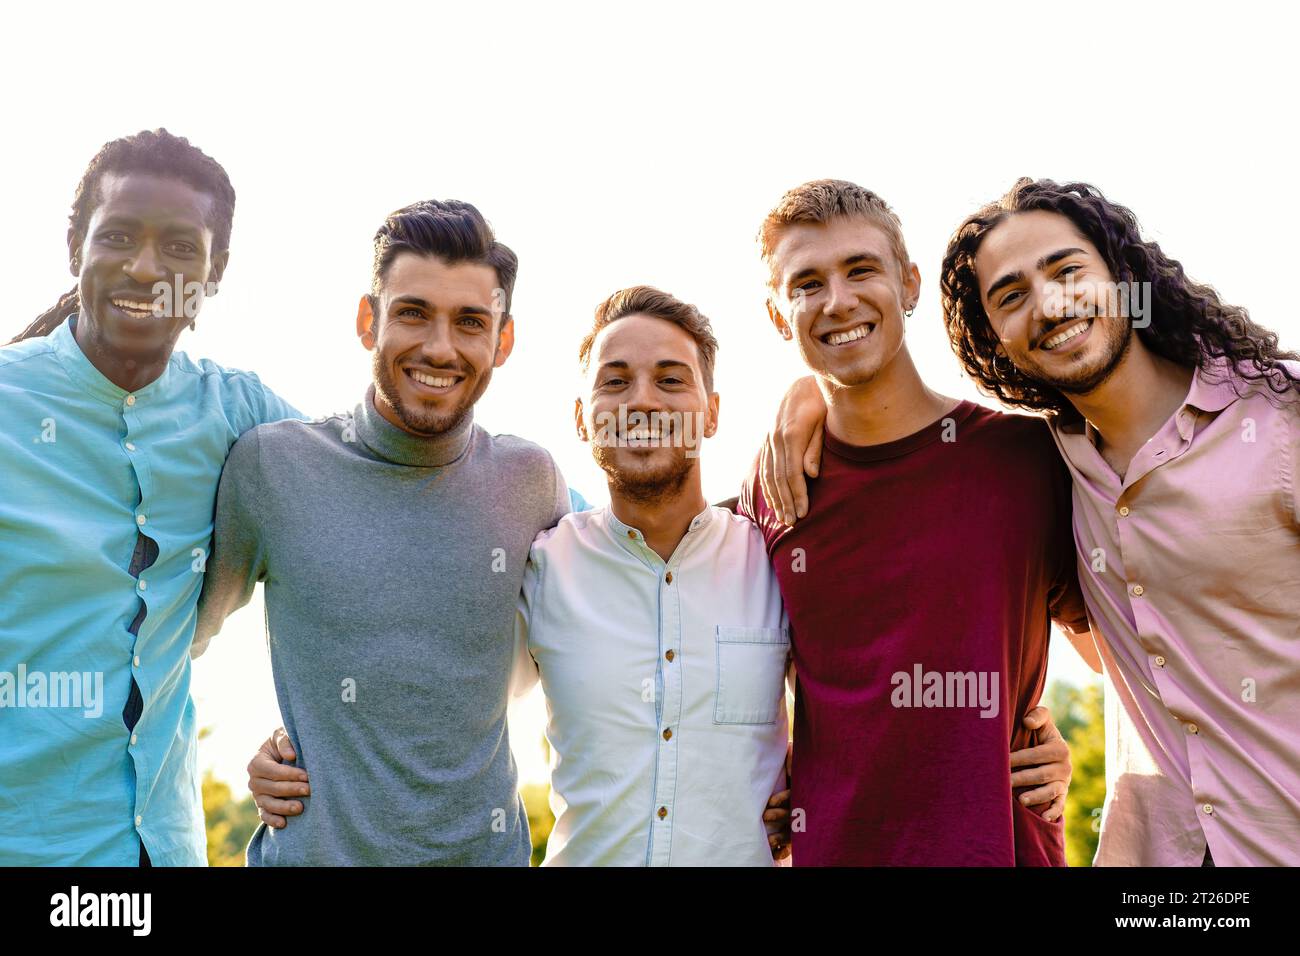 Un groupe multiracial de cinq amis masculins embrasse l'extérieur, partageant un moment d'unité et de joie. Ils sourient tous chaleureusement, dirigeant leur gai express Banque D'Images